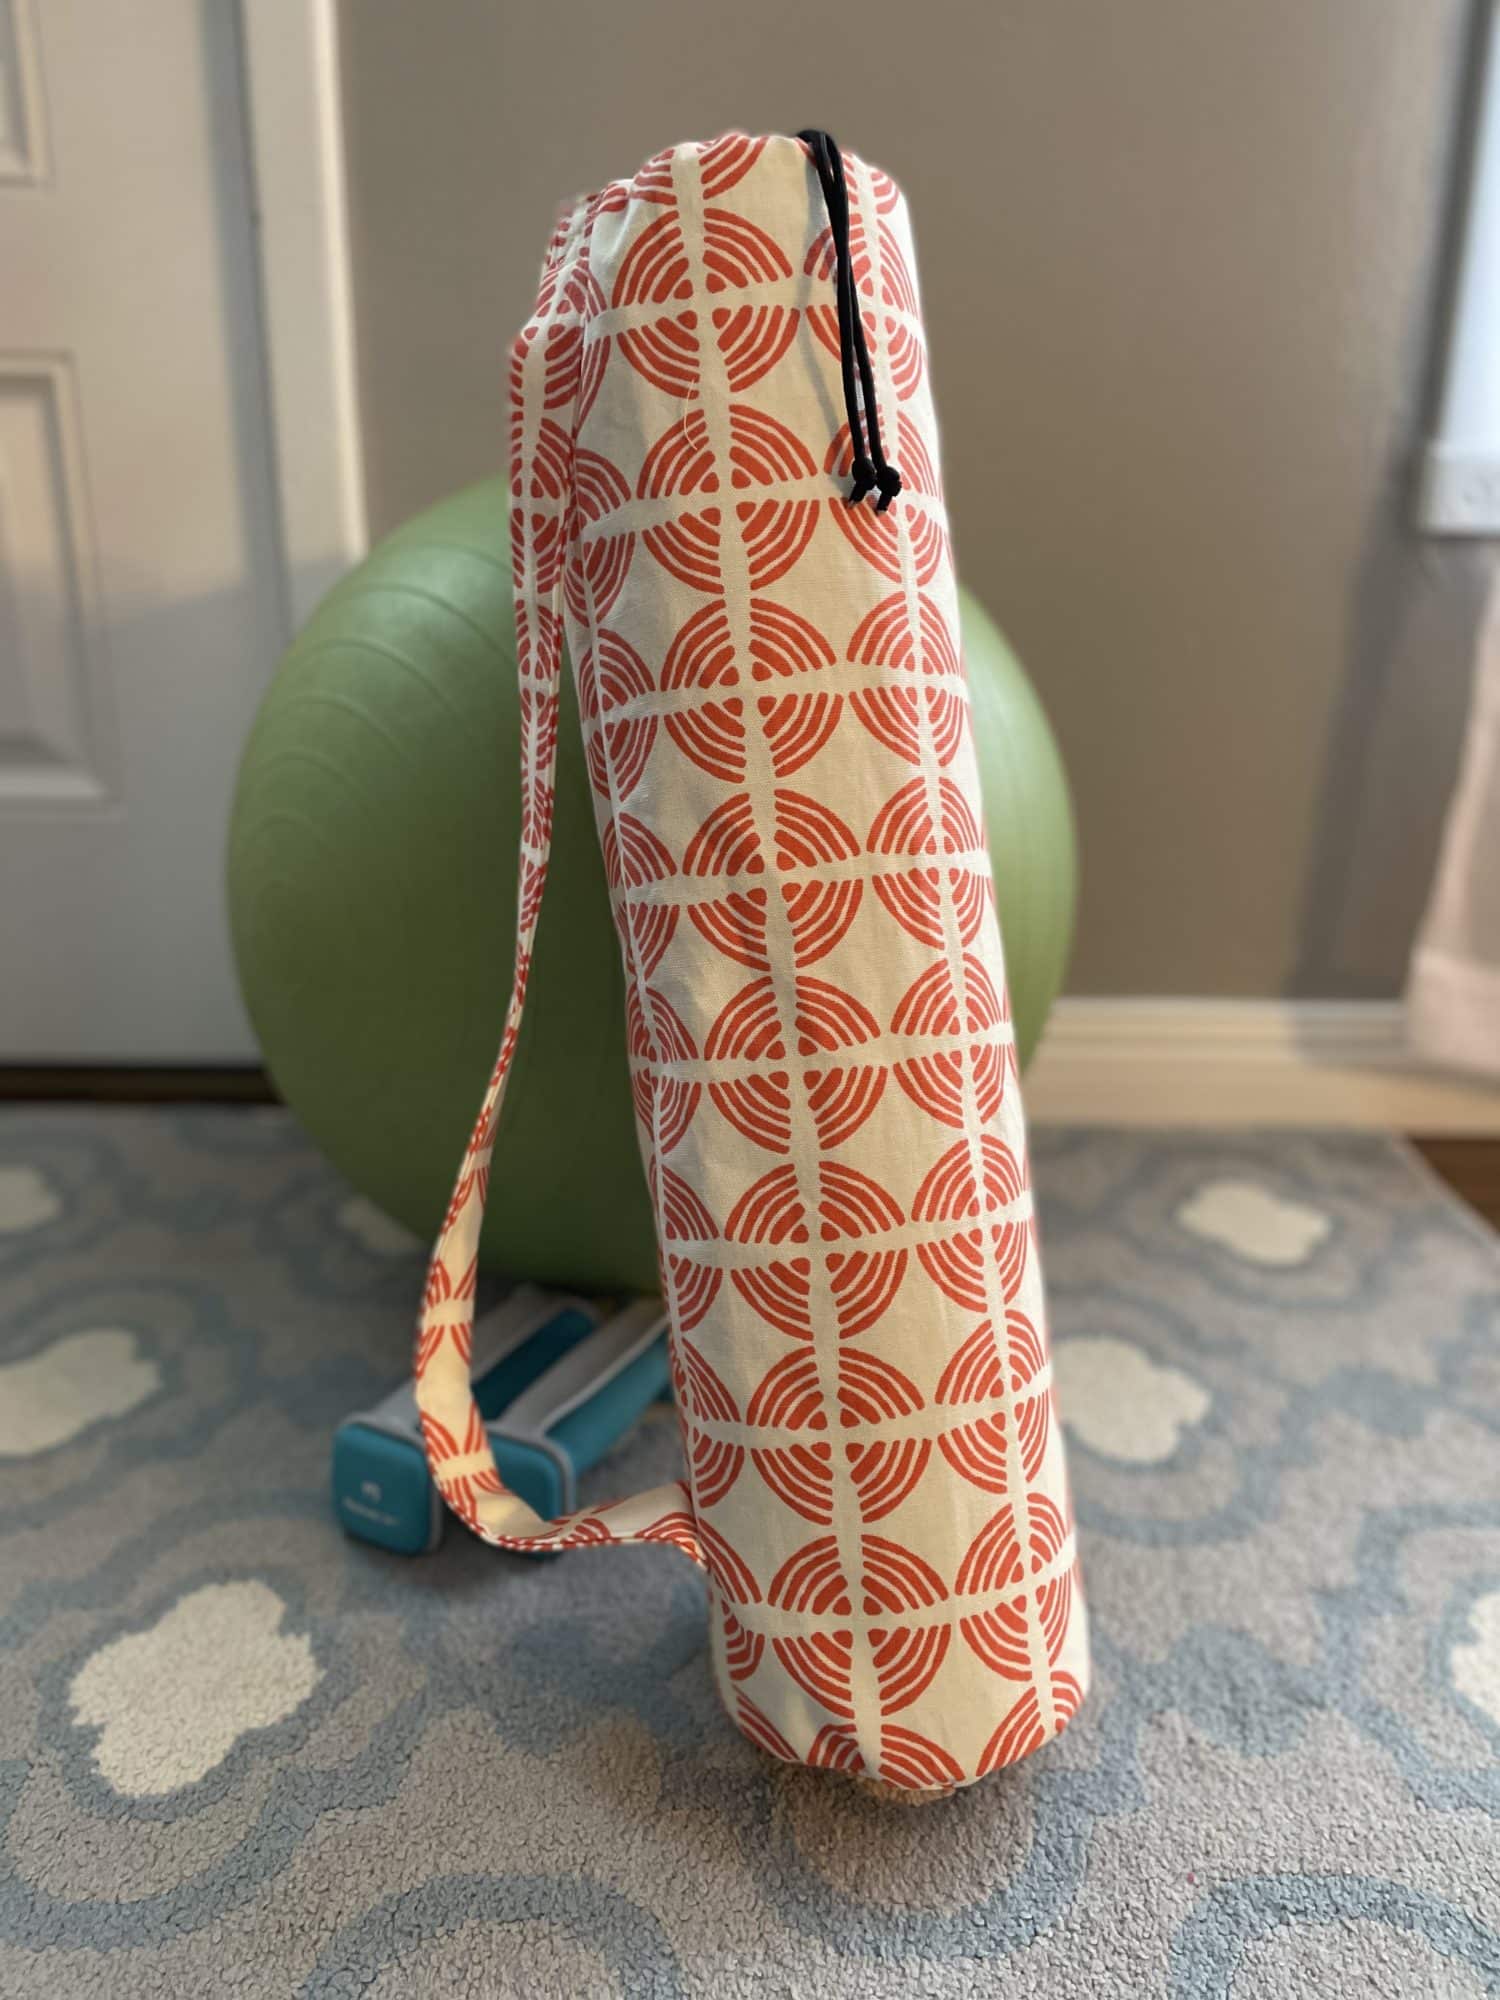 Yoga Mat Bag- DIY Sewing Tutorial, 56% OFF